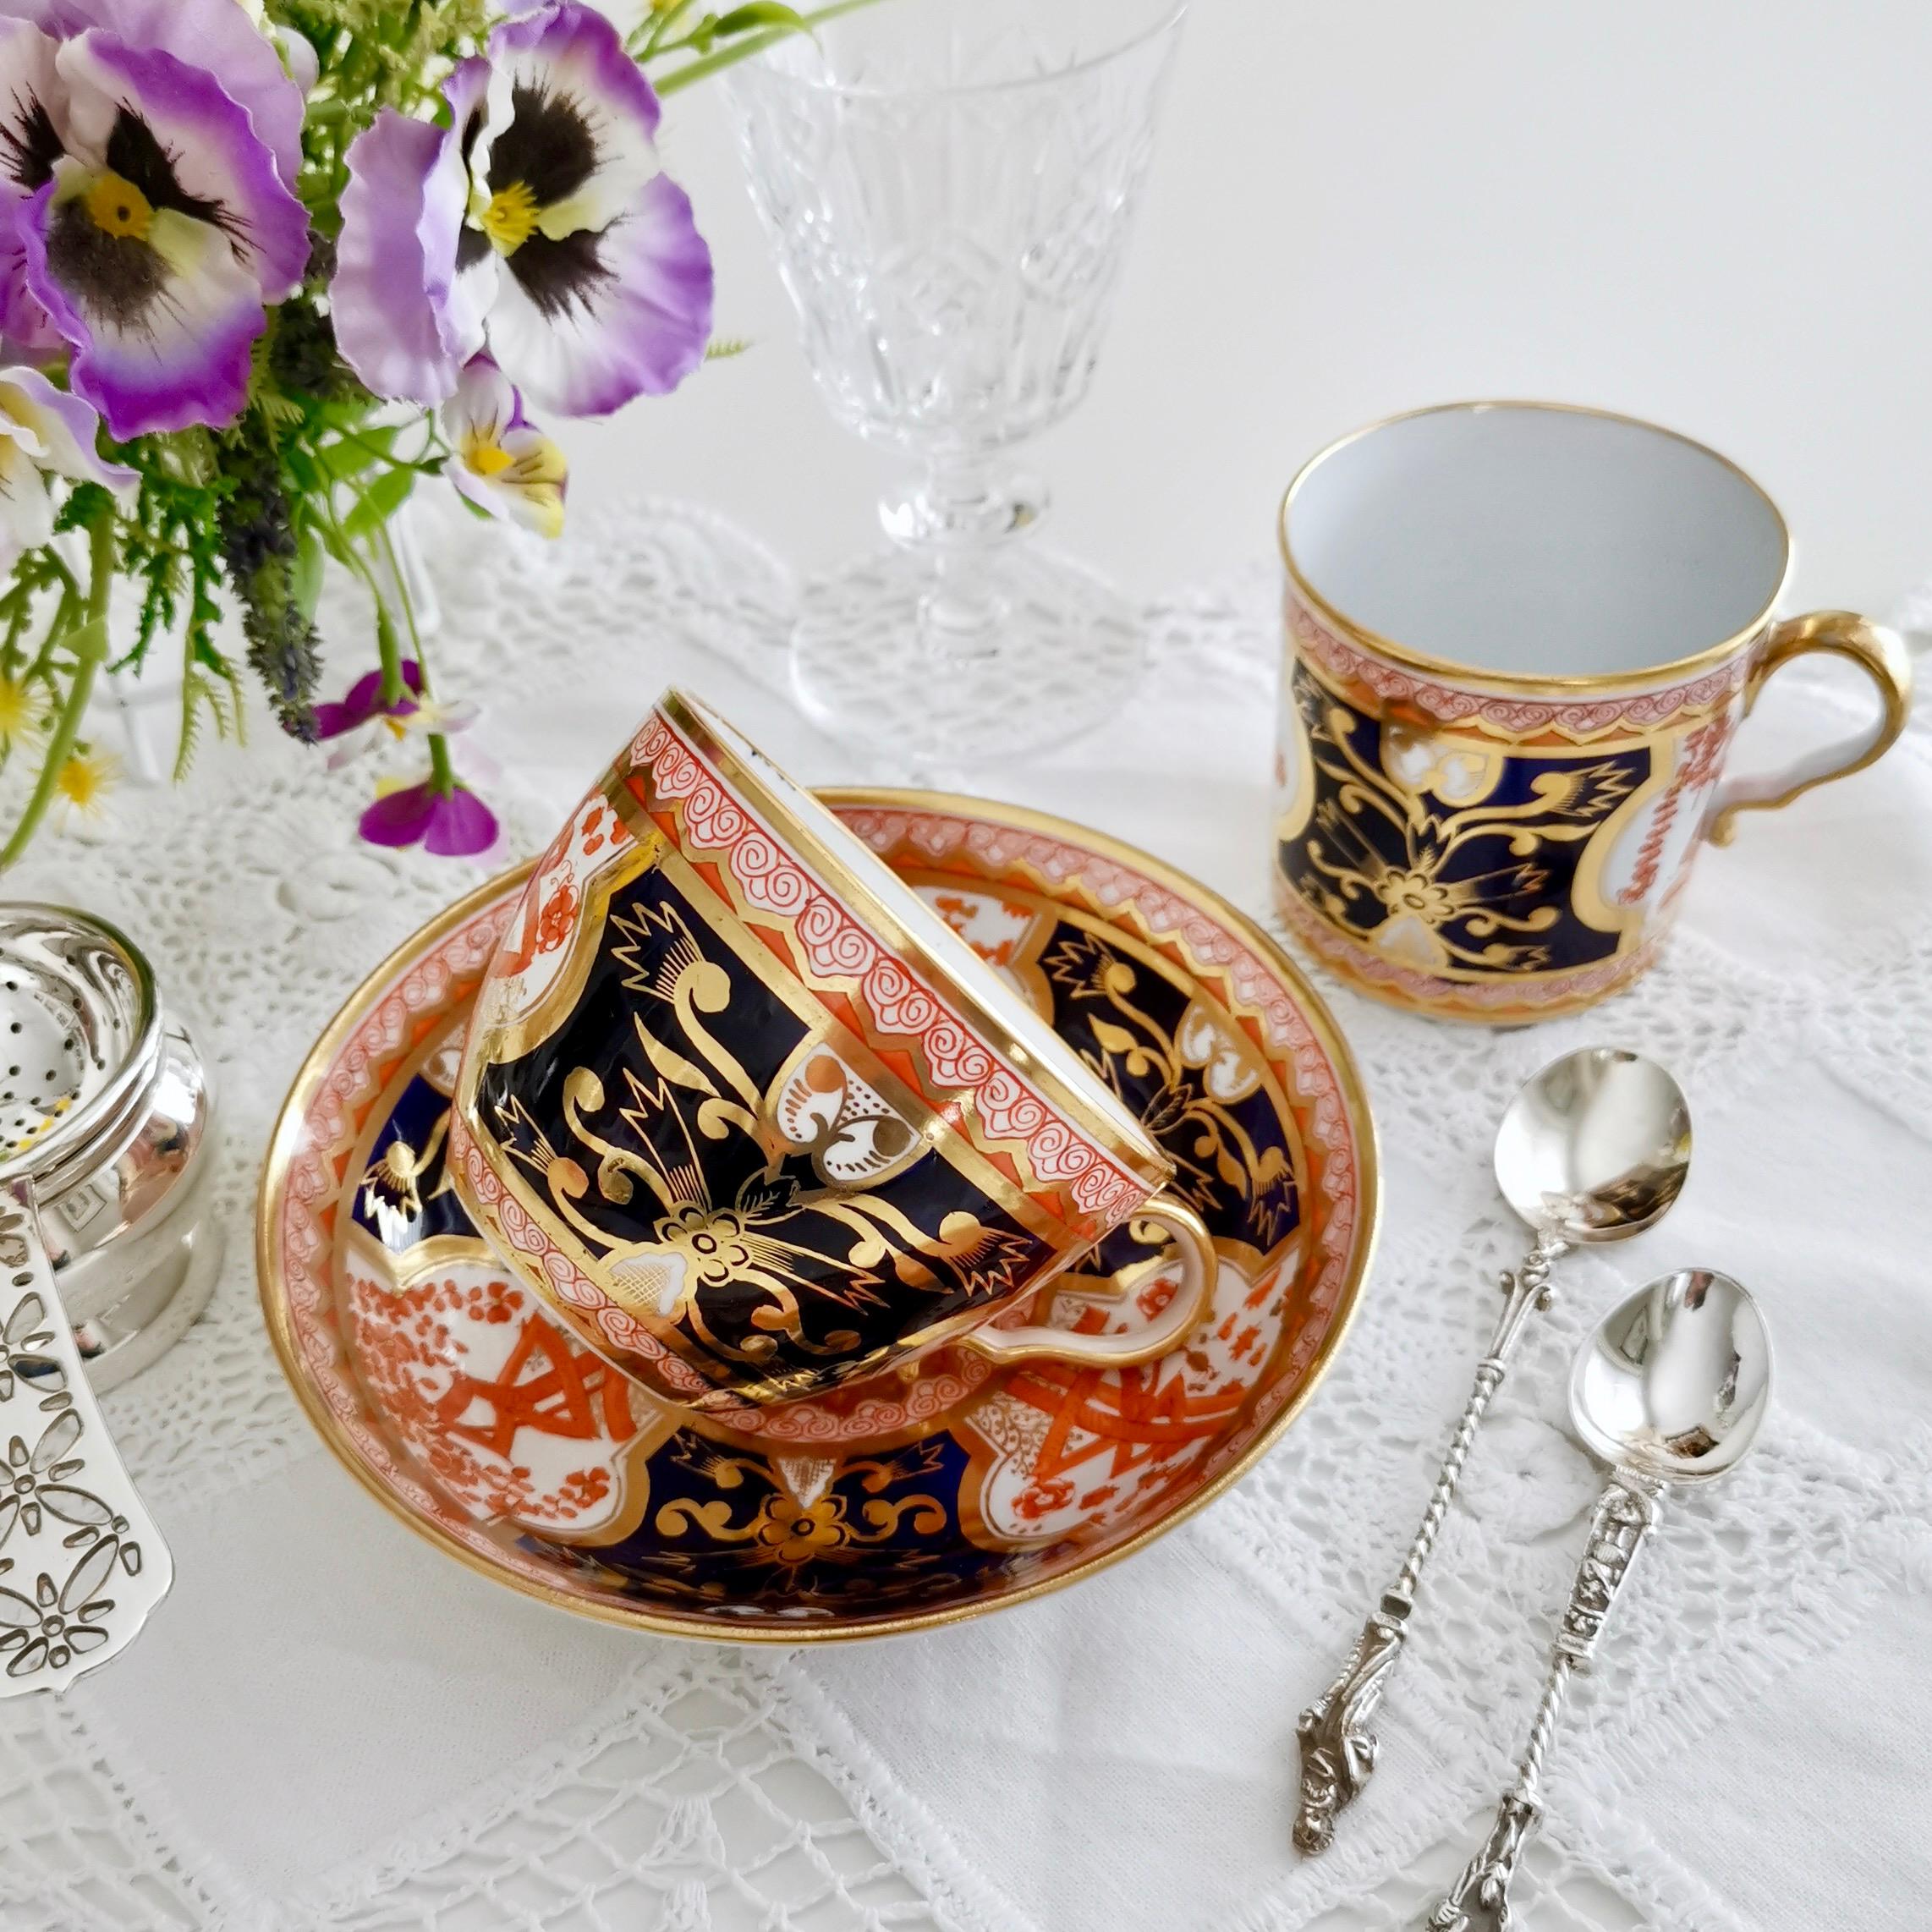 Dies ist eine schöne verwaiste Teetasse von Spode aus dem Jahr 1810. Es trägt ein wunderschönes, von Japan inspiriertes Imari-Muster.

Spode war der große Pionier unter den georgianischen Töpfern in England. Um das Jahr 1800 perfektionierte er das